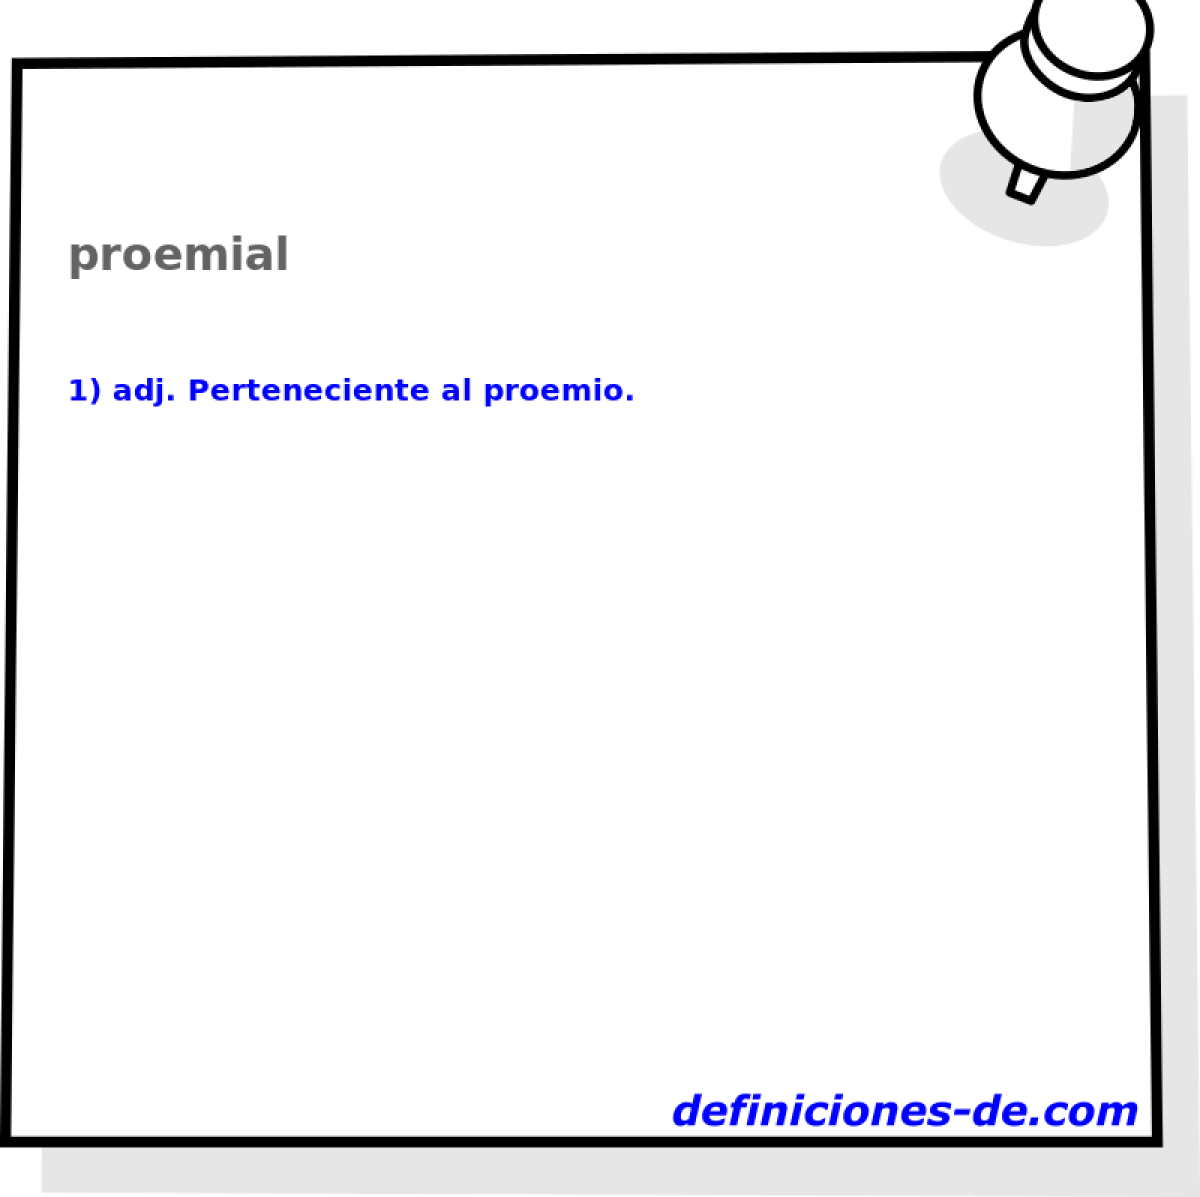 proemial 